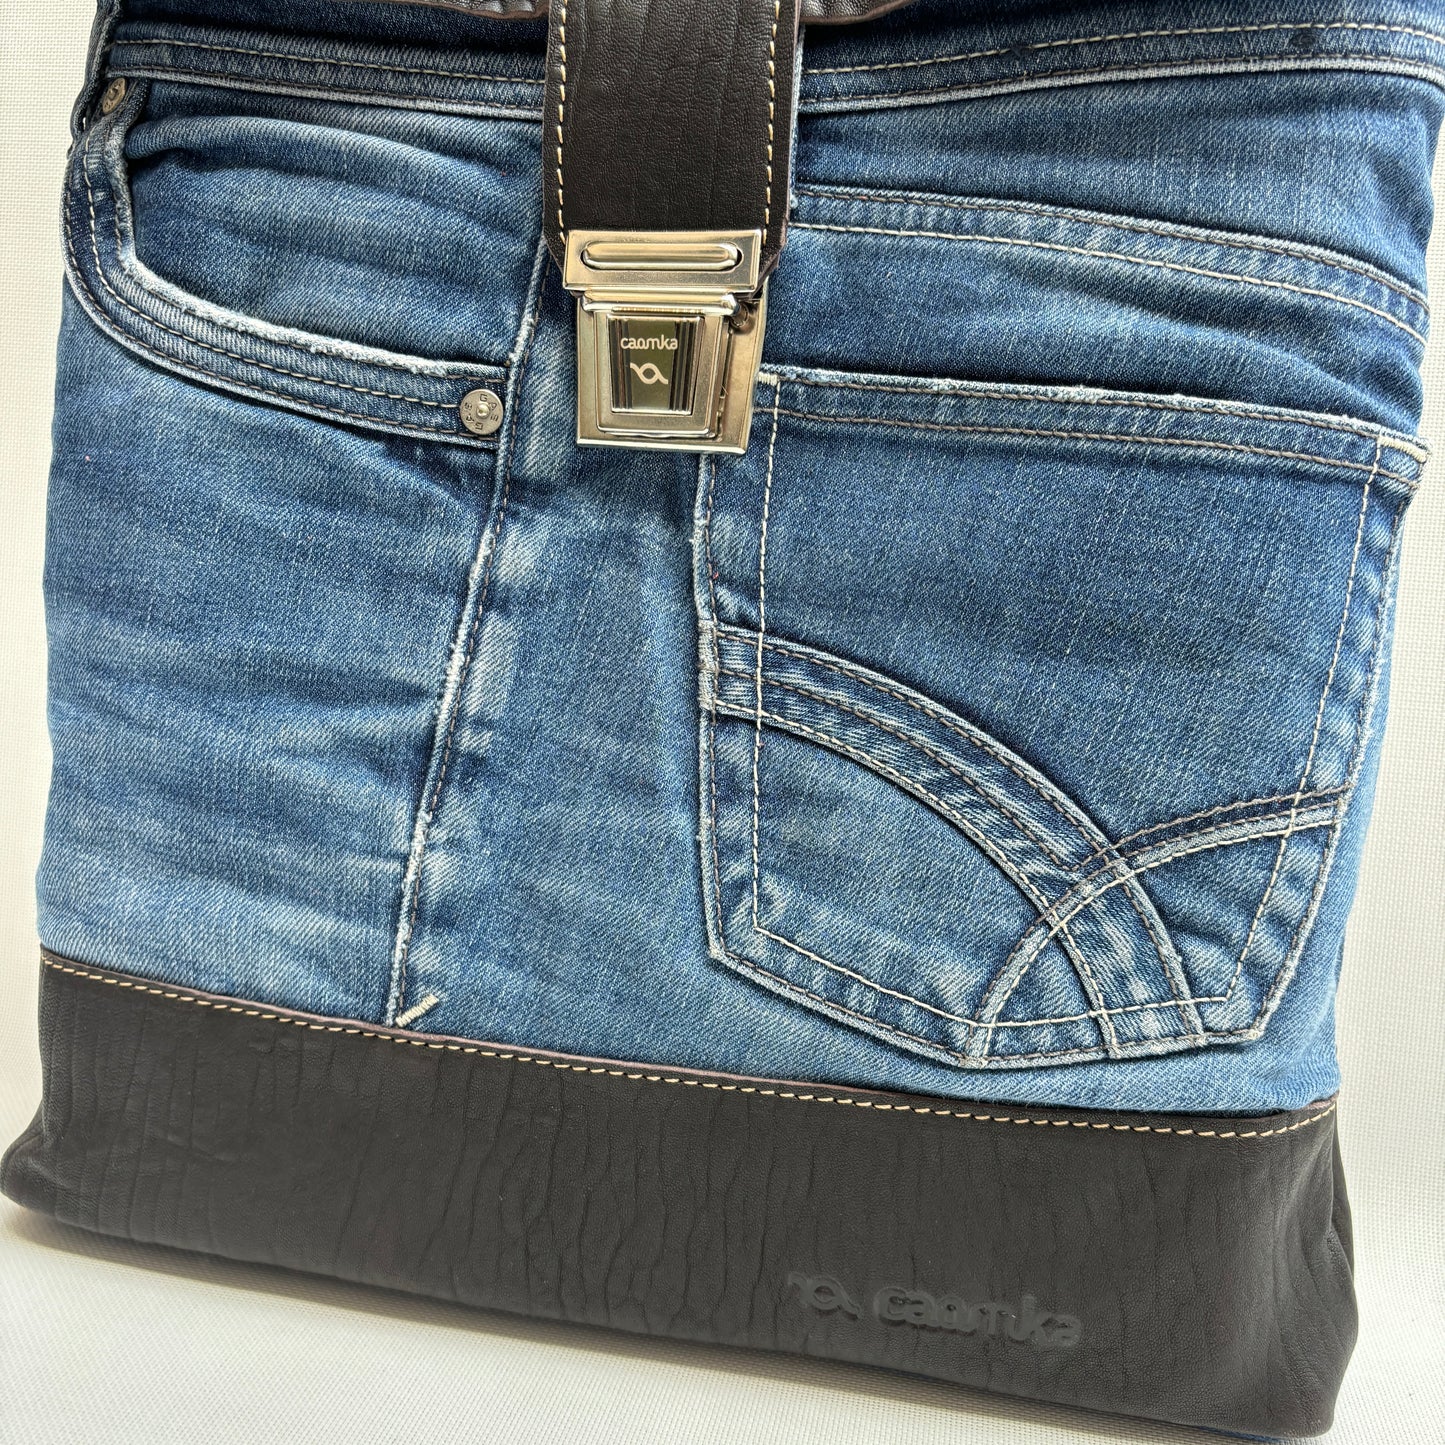 Mochila Top Caomka Recycled ♻️ Jeans · Pieza Única 15607